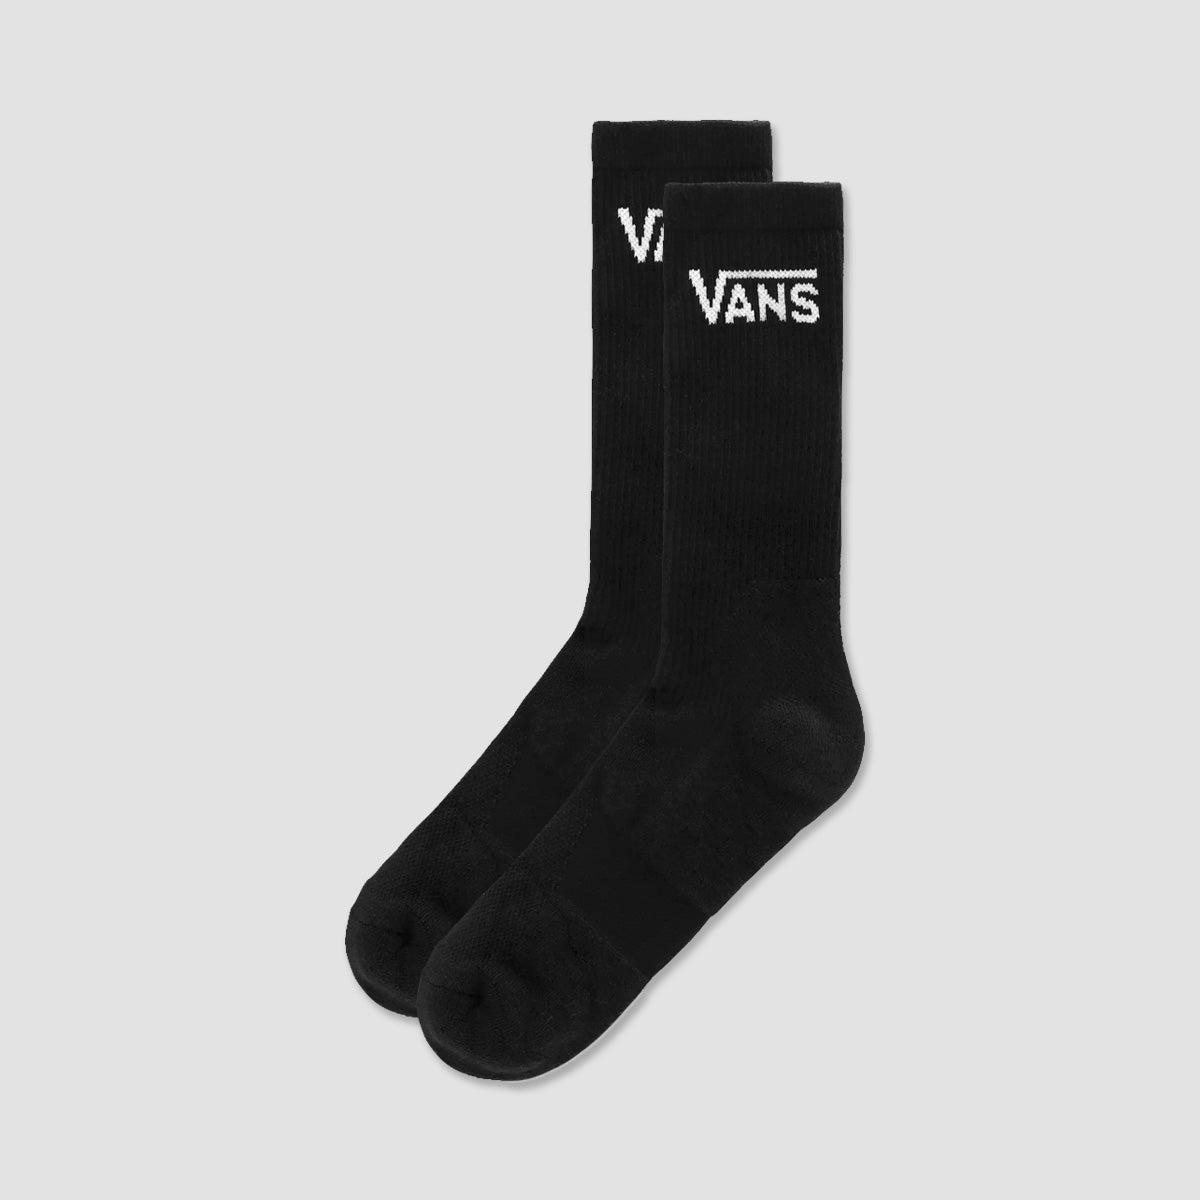 Vans Skate Crew Socks Black - Unisex